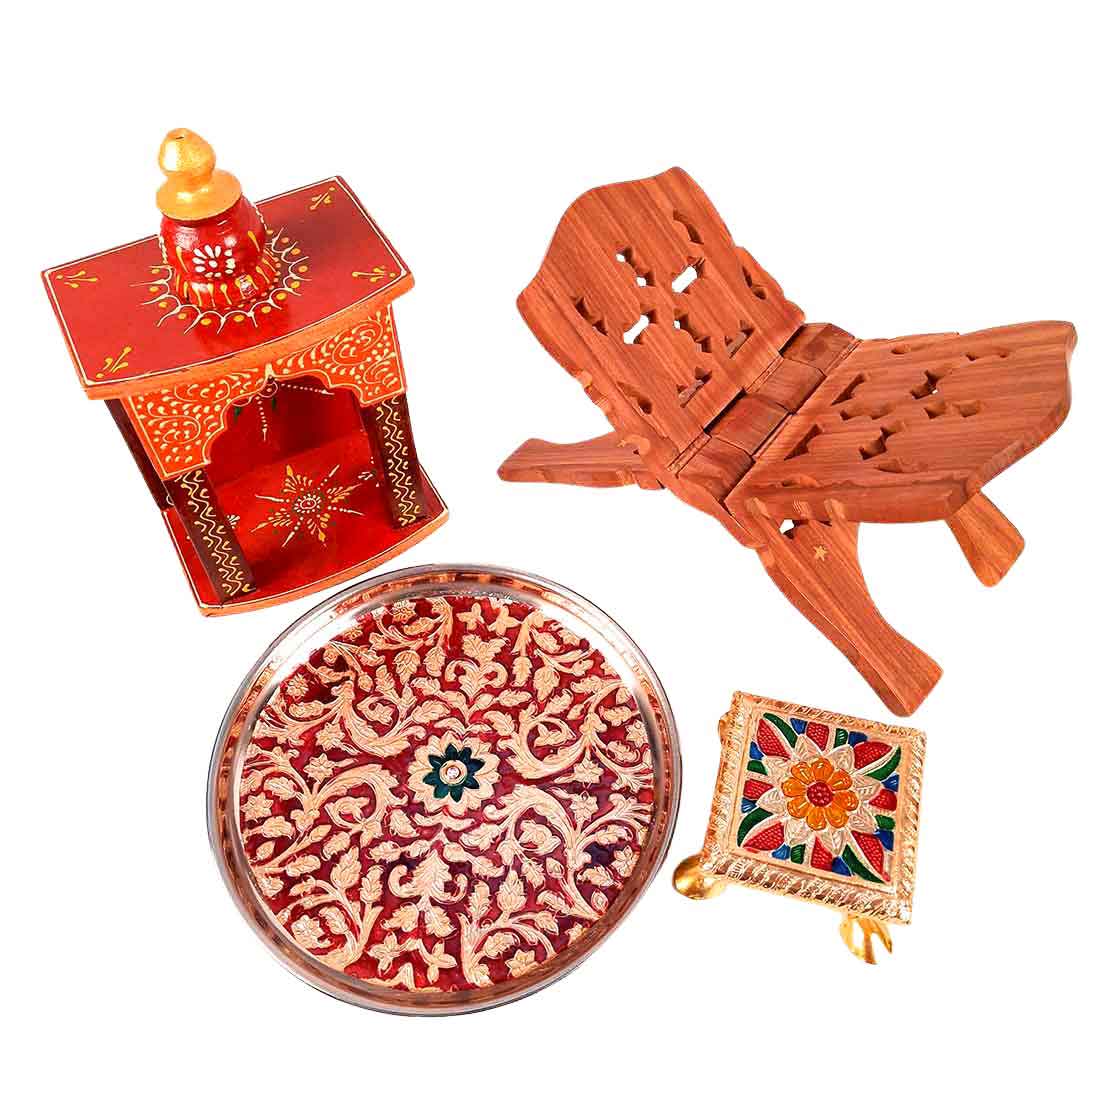 Pooja Temple, Pooja Chowki, Pooja Thali & Book Holder Set - For Pooja, Weddings & Festivals - Pack of 4